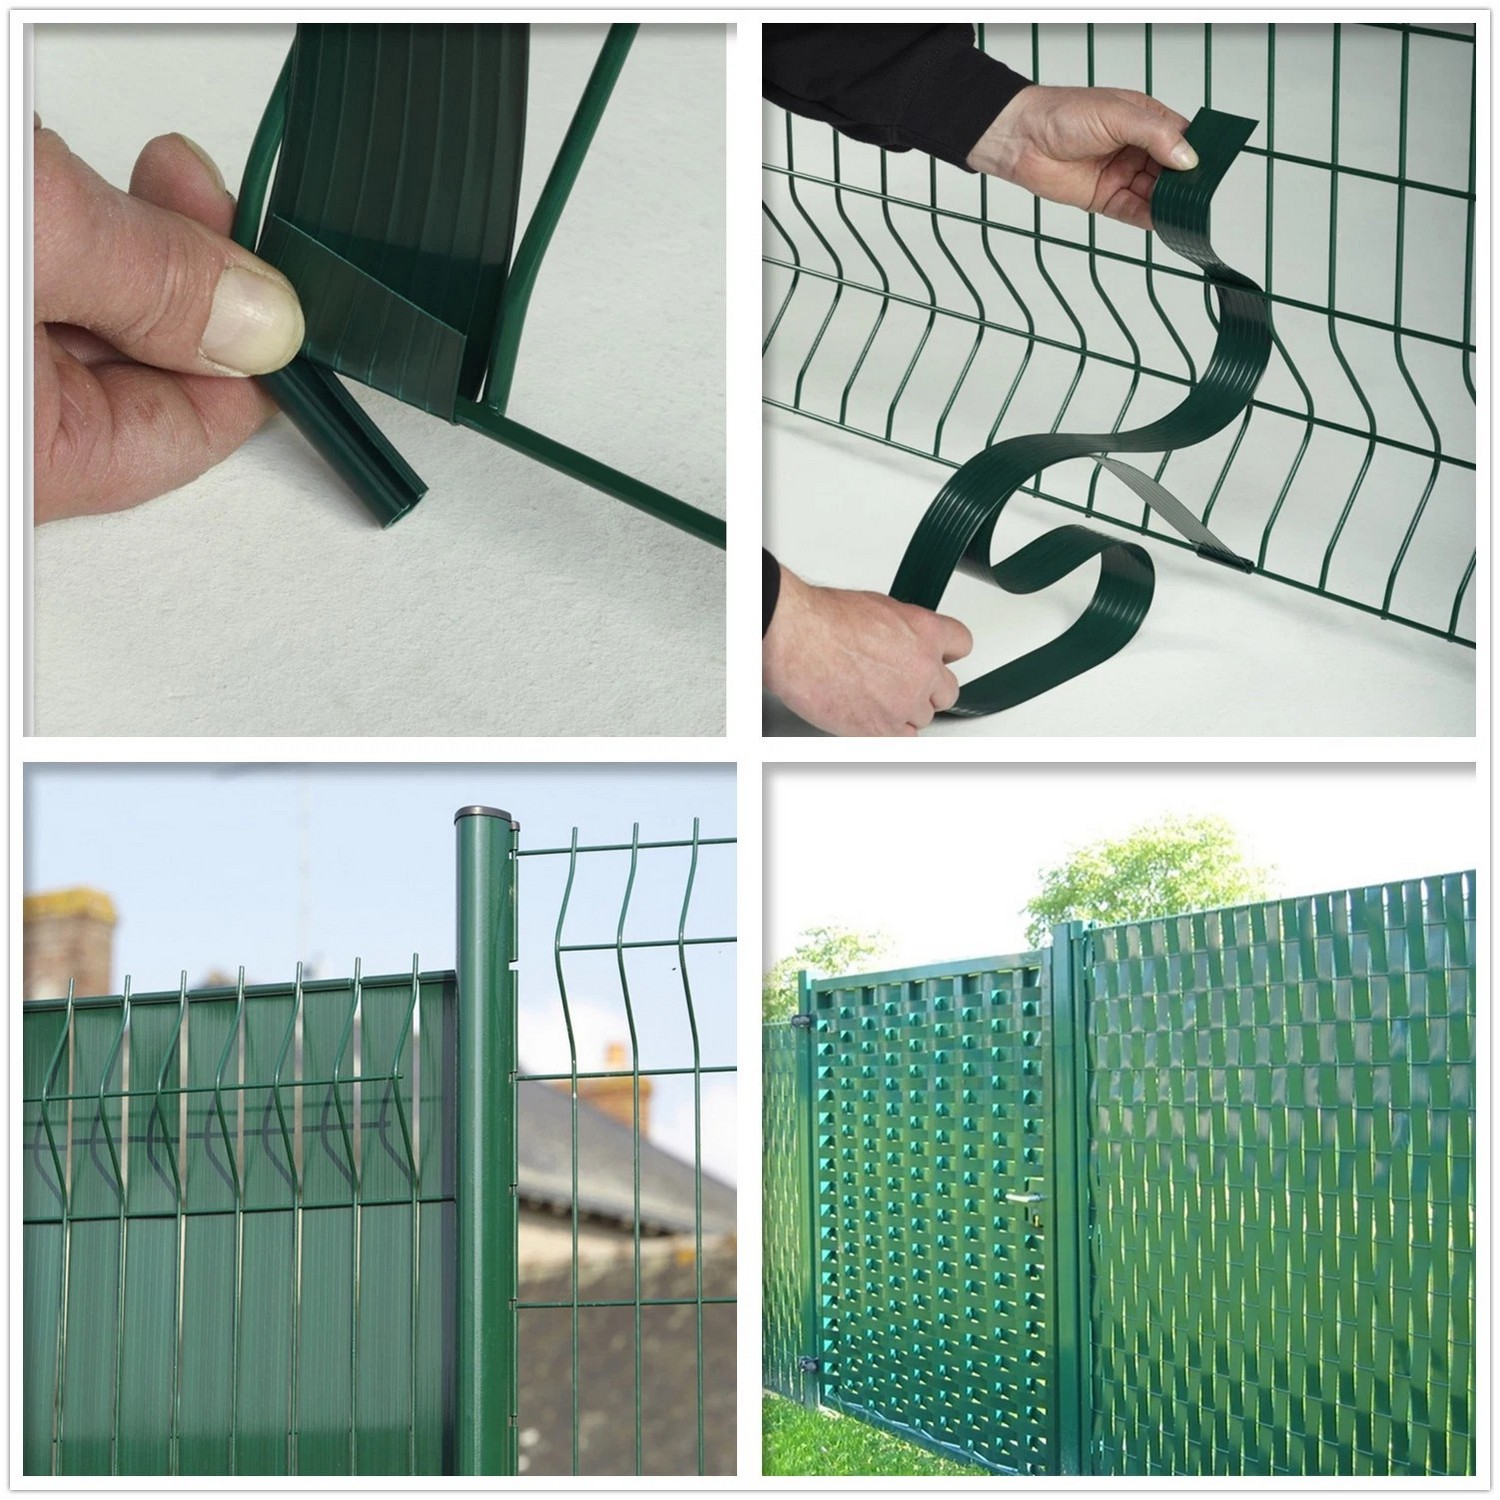 PVC elastīga plastmasas privātuma lente 3D sieta žogam zaļā krāsā